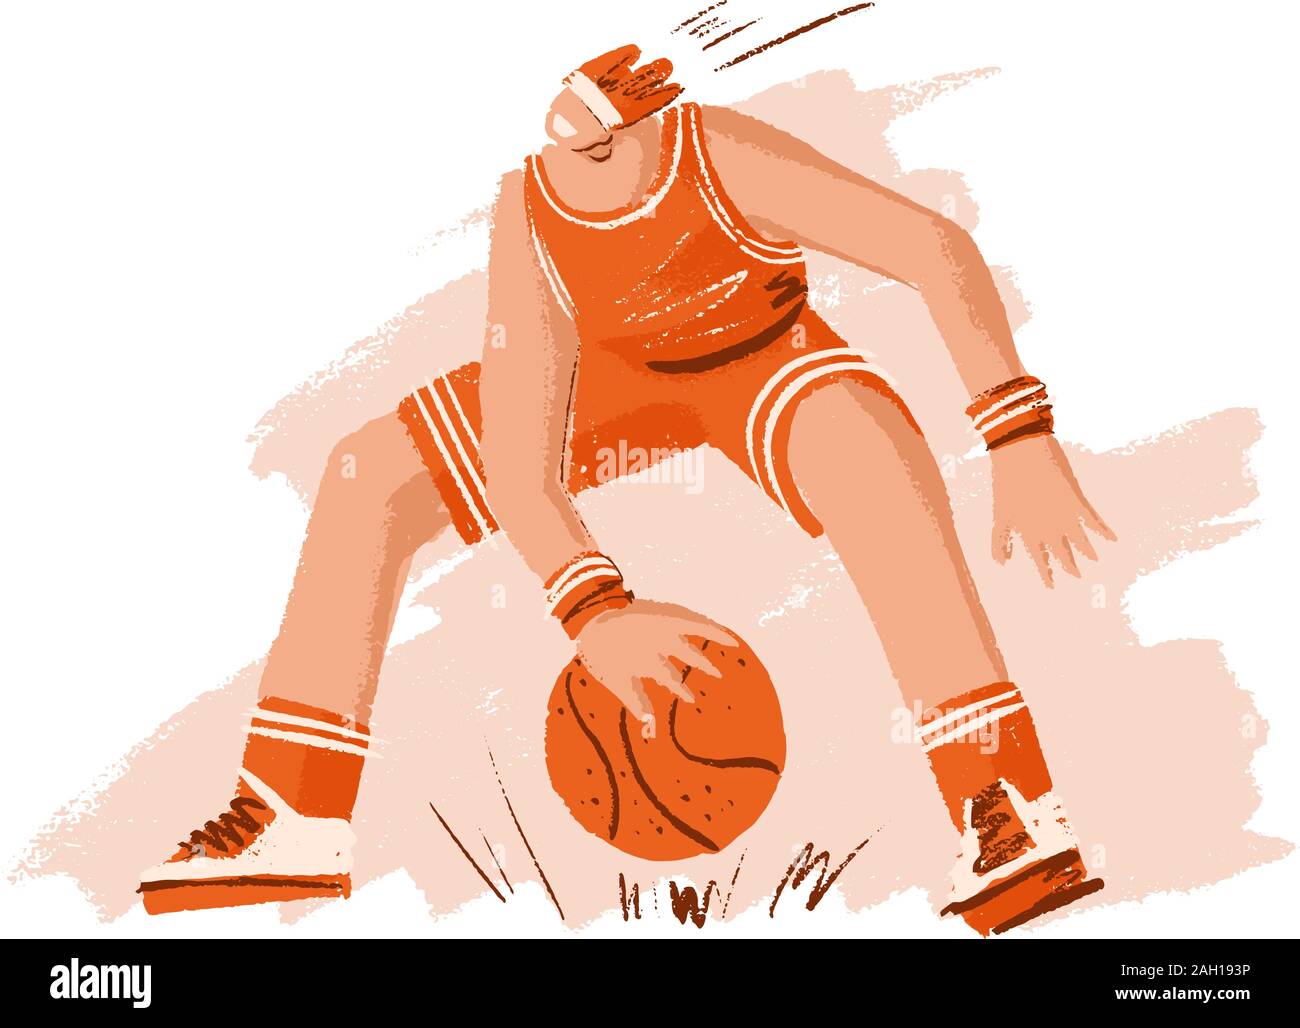 Vector disegnati a mano disegno colorato illustrazione del giocatore di pallacanestro professionale, giocando con basket ball in posa dinamica, isolato su bianco. Mano Illustrazione Vettoriale